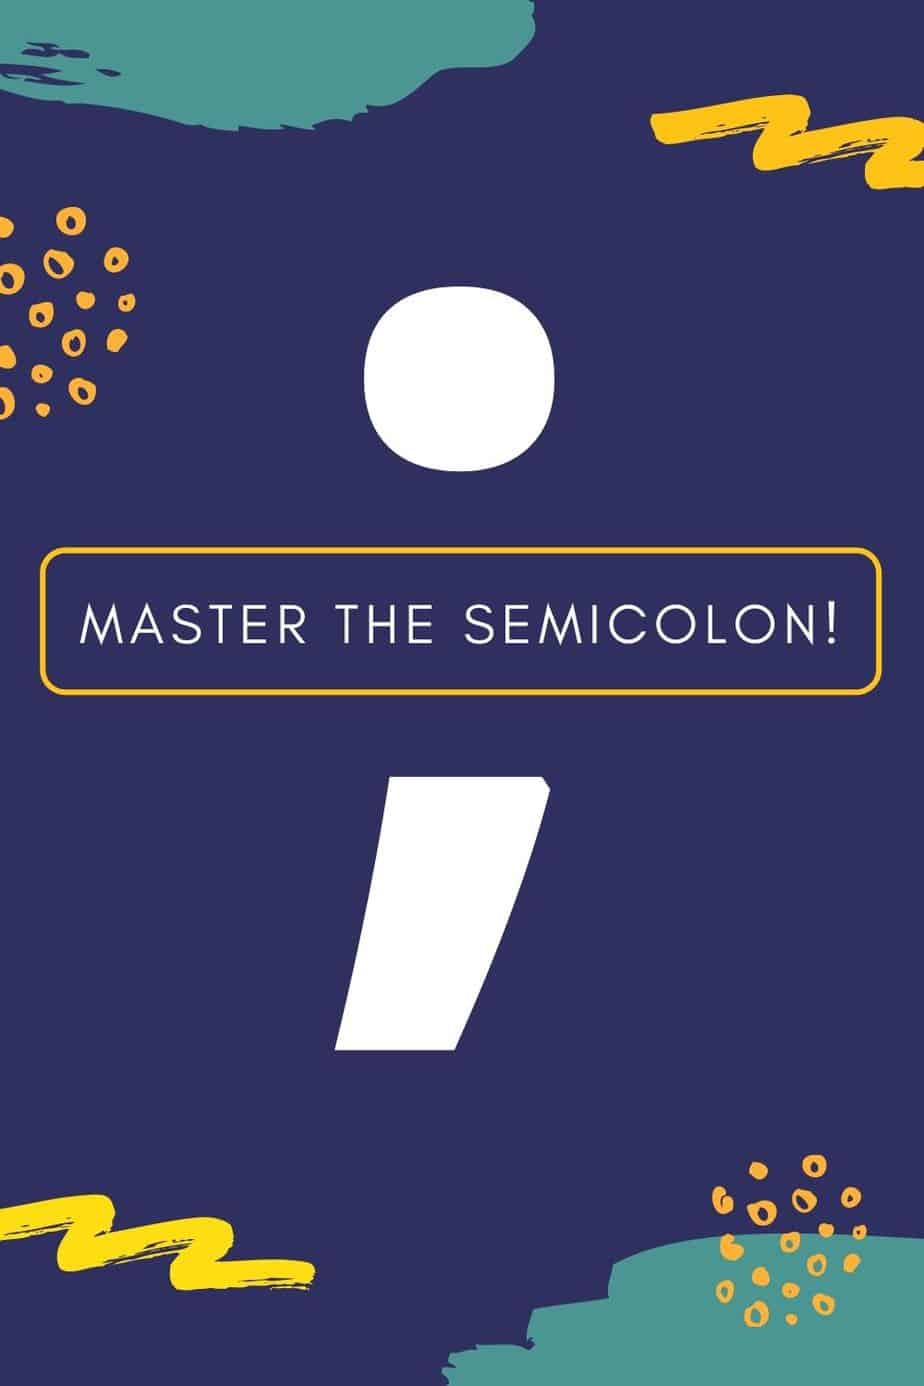 Usage of the Semicolon